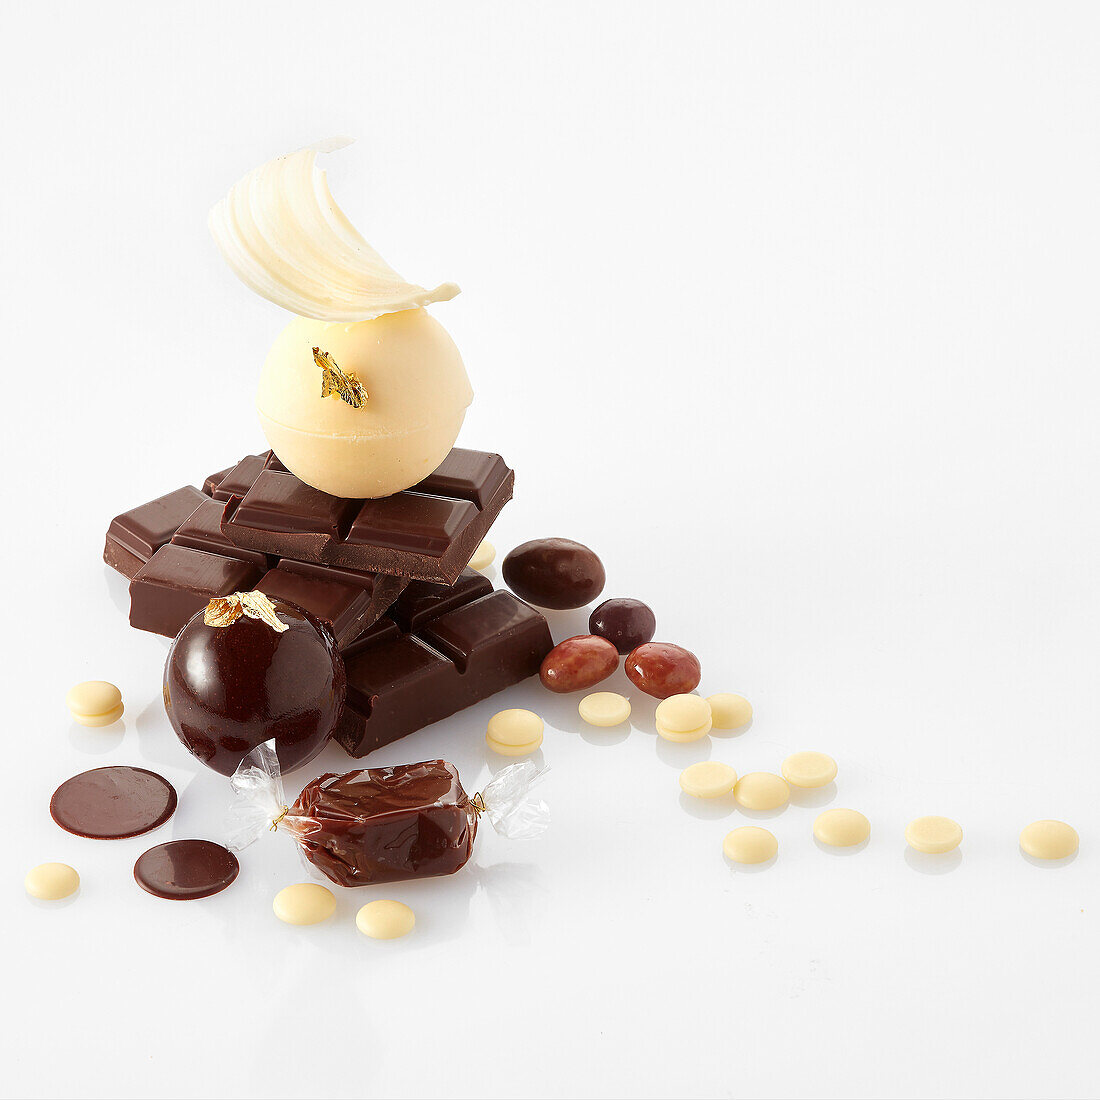 Deklination von Schokolade als Konfekt und Dessert